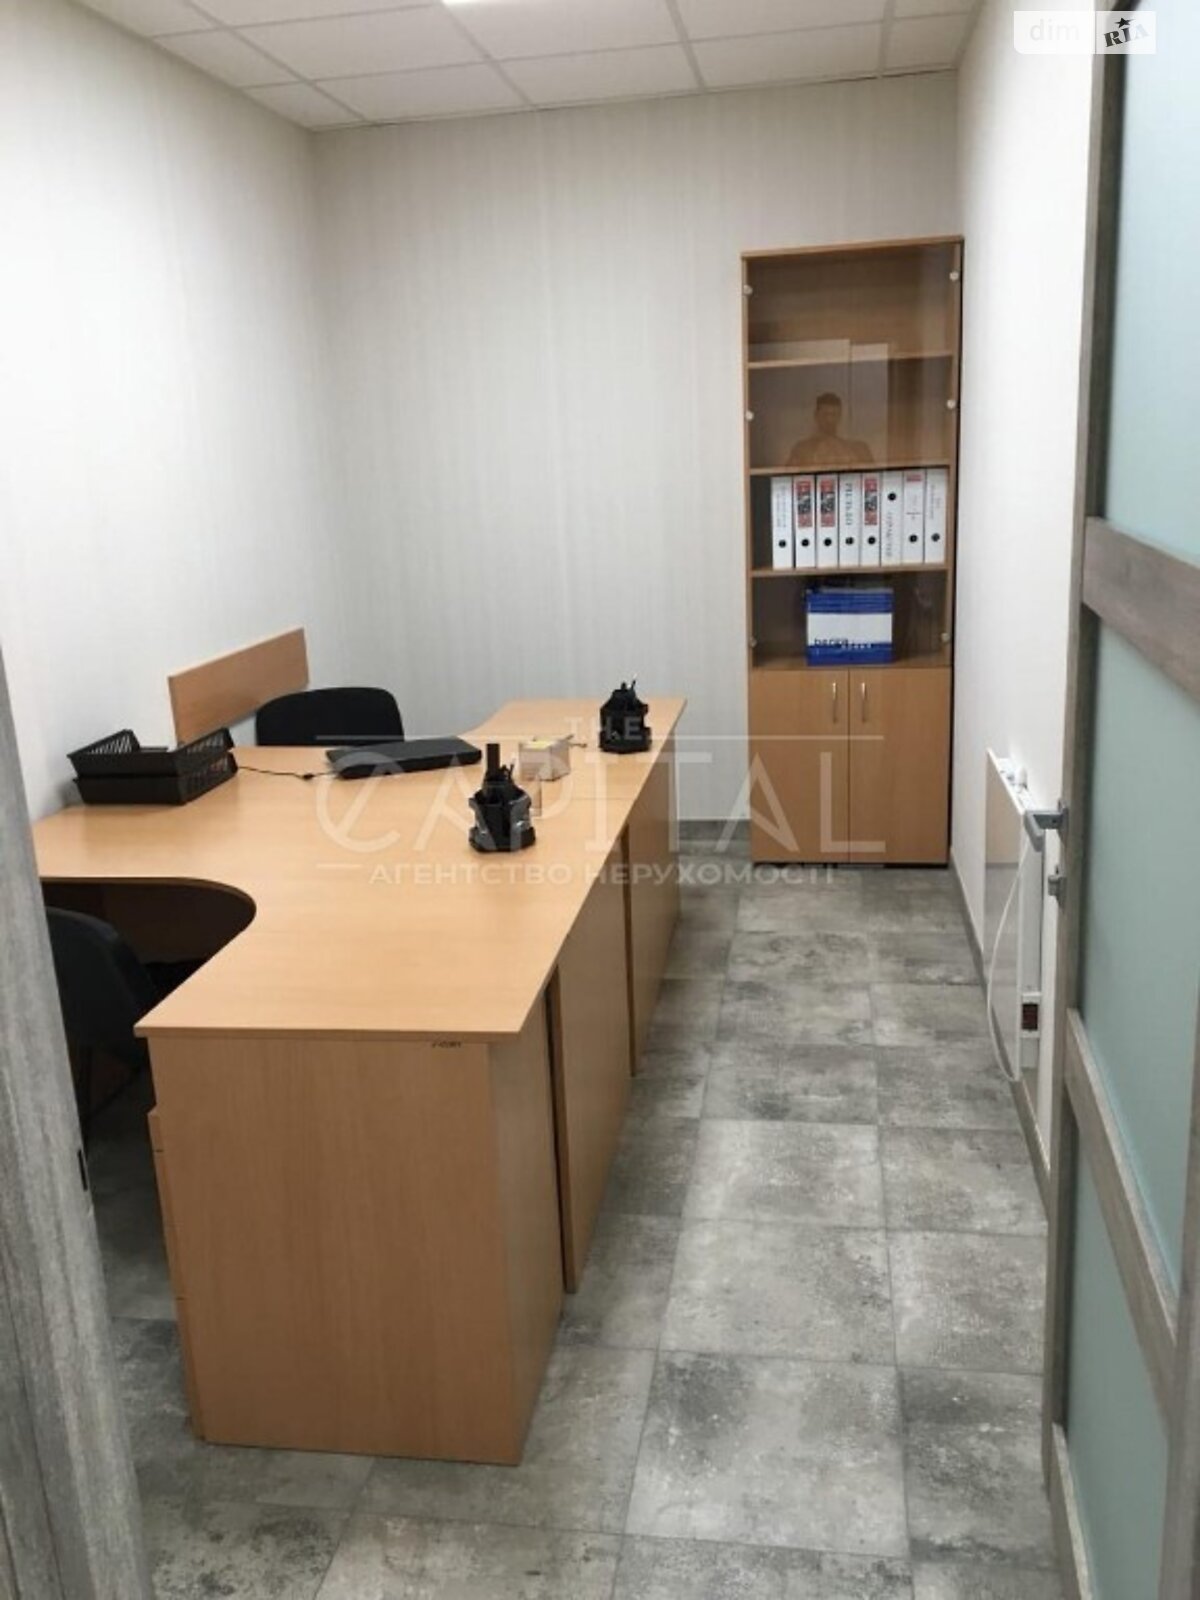 Офисное помещение на 97 кв.м. в Киеве фото 1